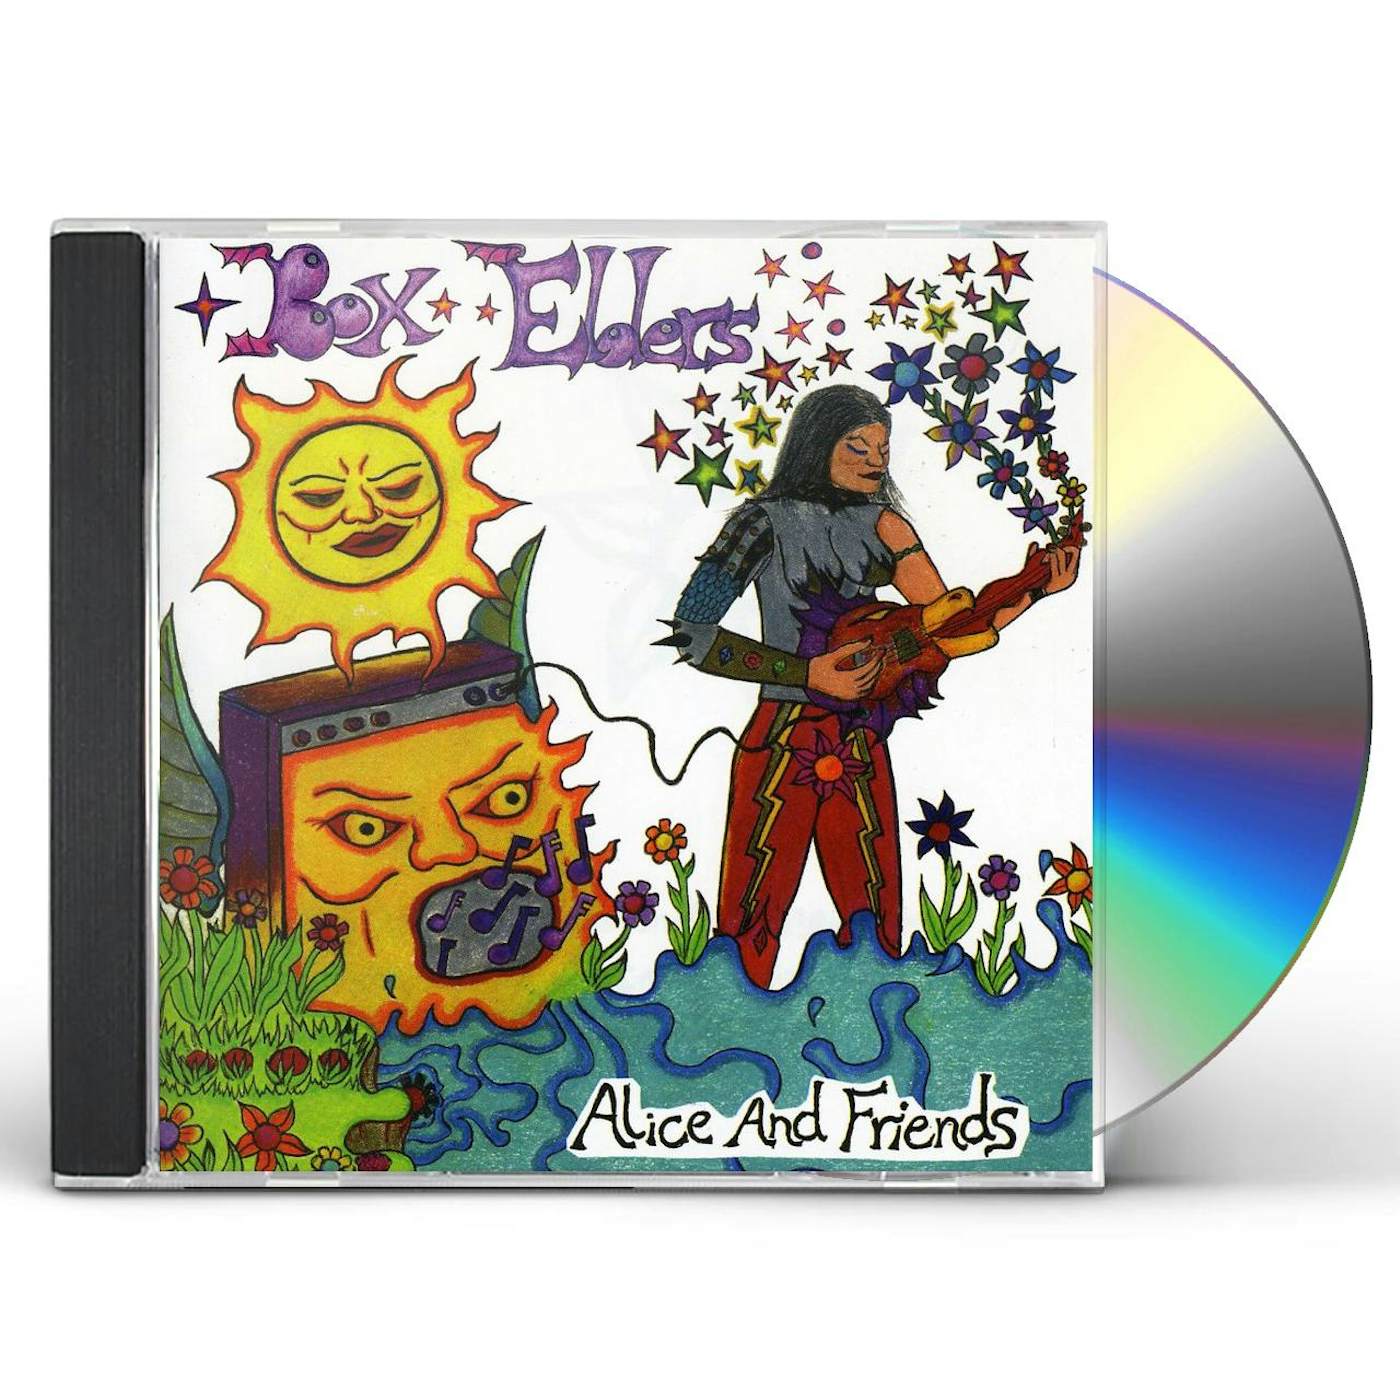 Box Elders ALICE & FRIENDS CD